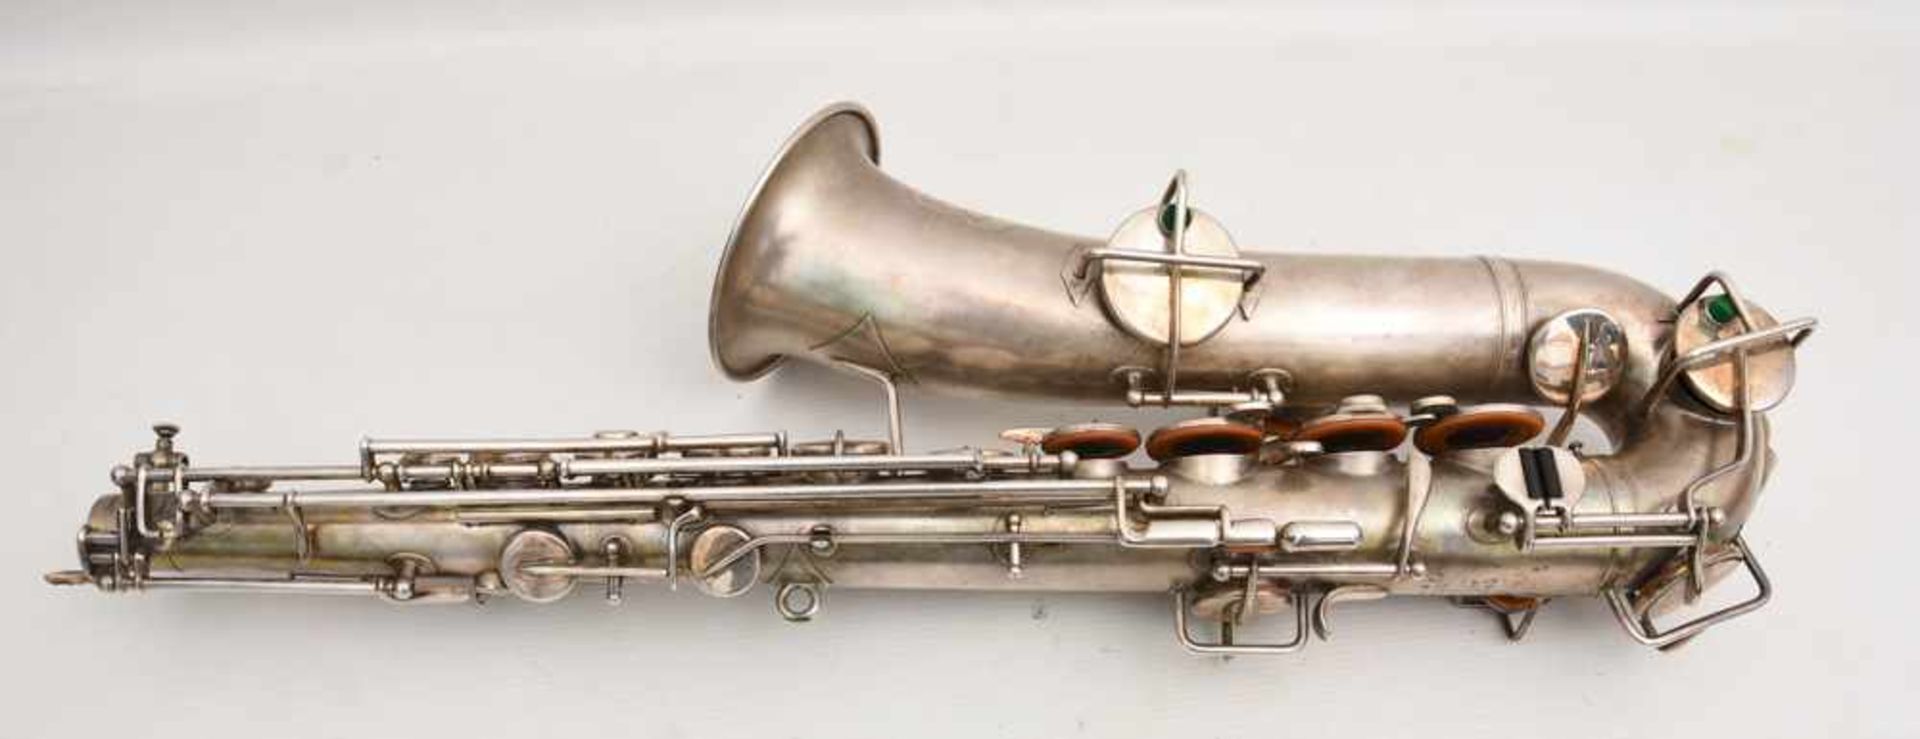 SAXOPHONE MIT KASTEN UND ZUBEHÖR, bez. "the buescher elkhart ind saxophone" nummeriert 163912. d. 12